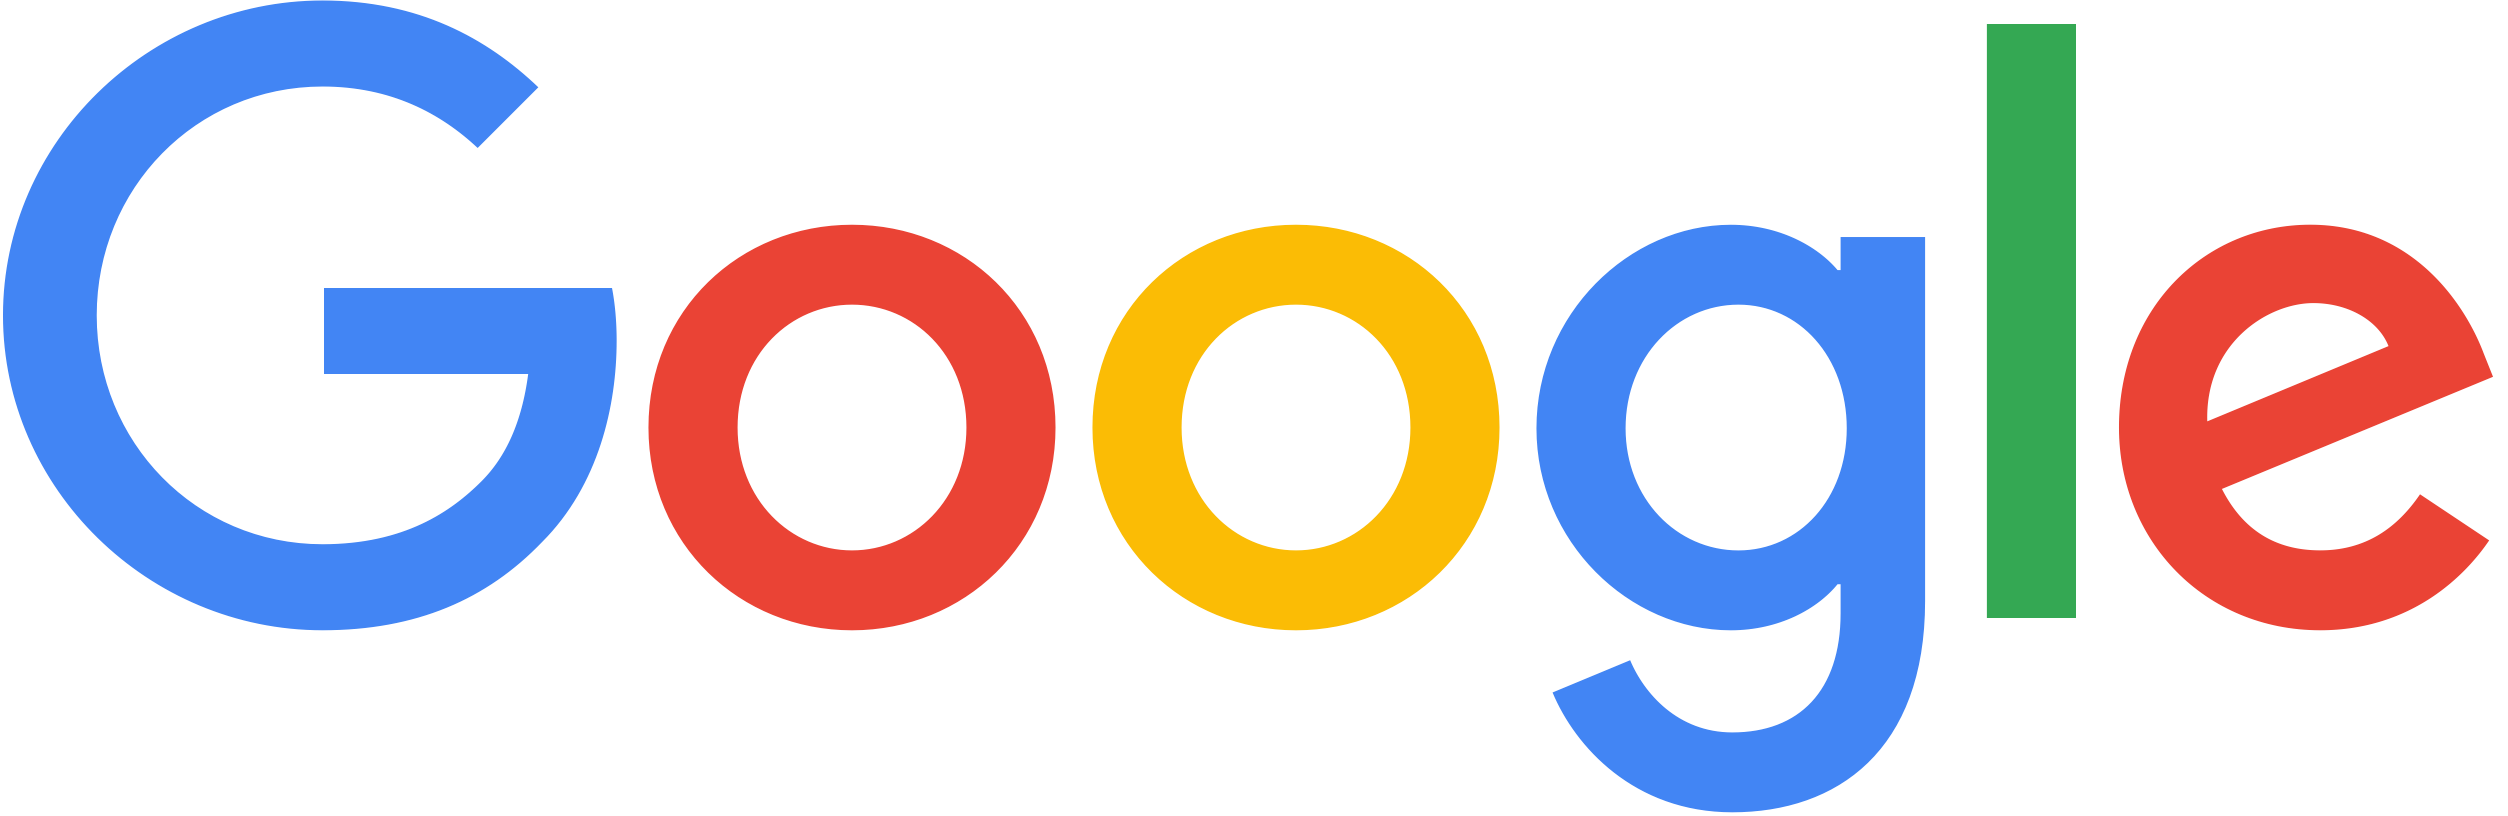 グーグル合同会社